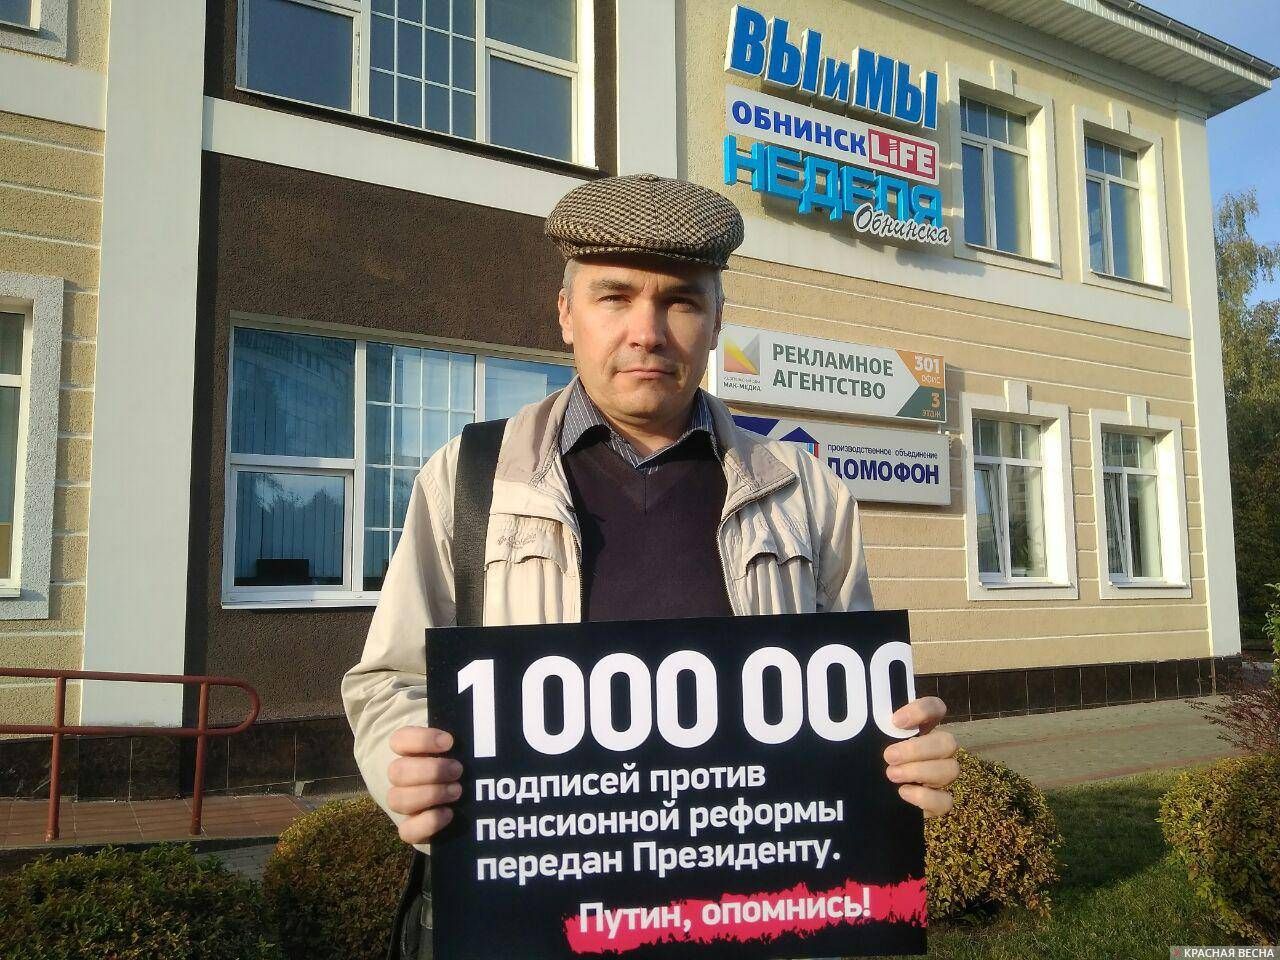 Одиночный пикет против пенсионной реформы в городе Обнинске